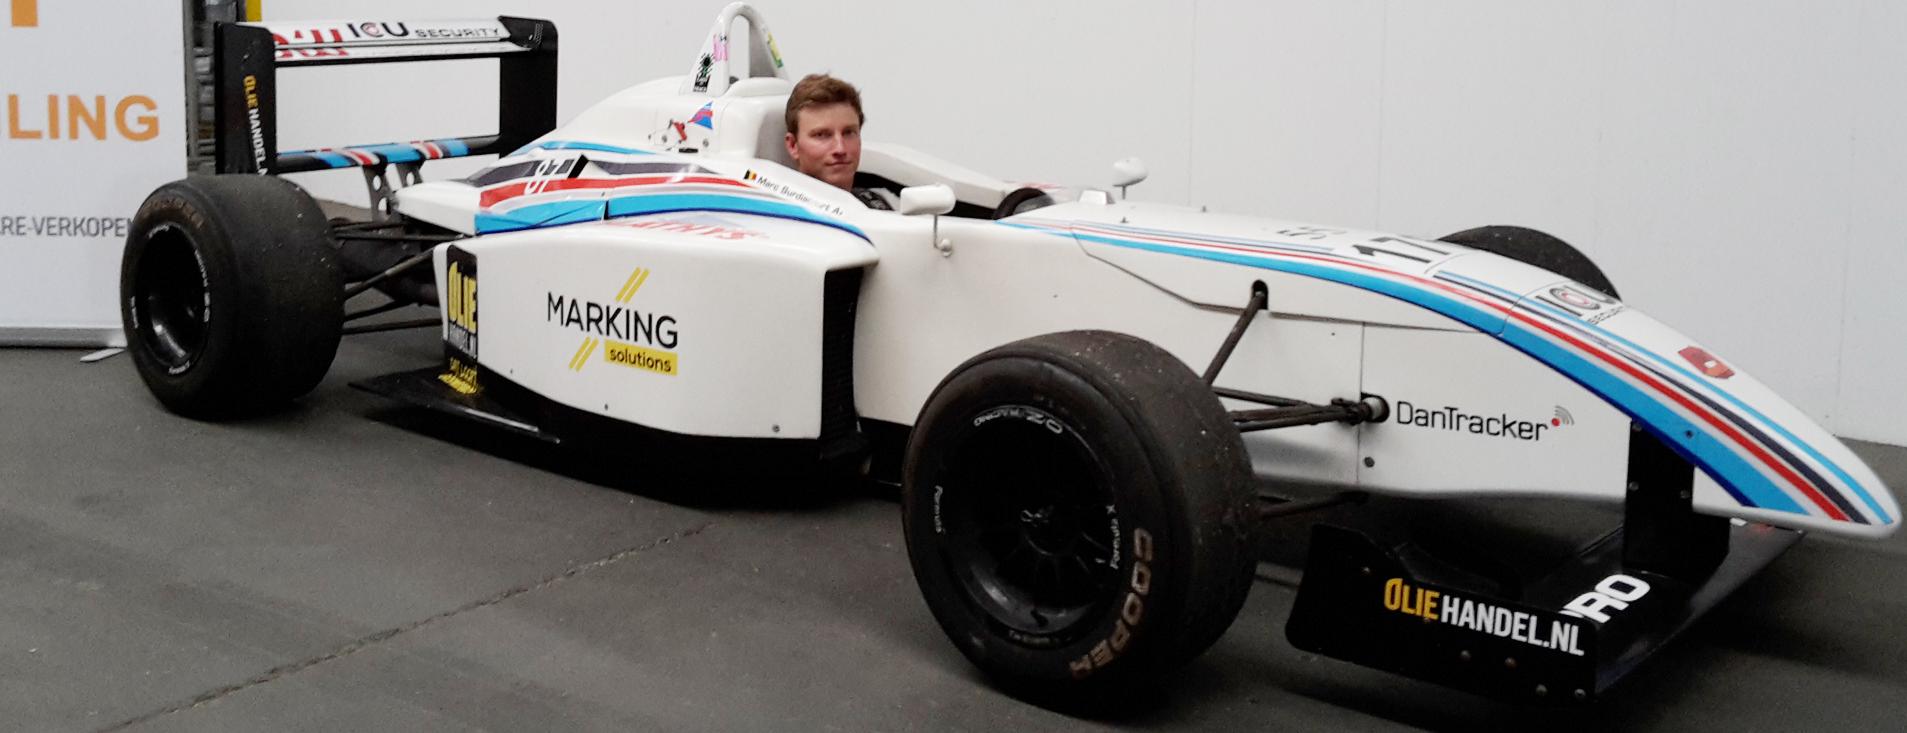 Buitensporig Uitgebreid Oorzaak Buitenkansje voor autofanaten: Formule 3 racebolide te koop (Wielsbeke) |  Het Nieuwsblad Mobile